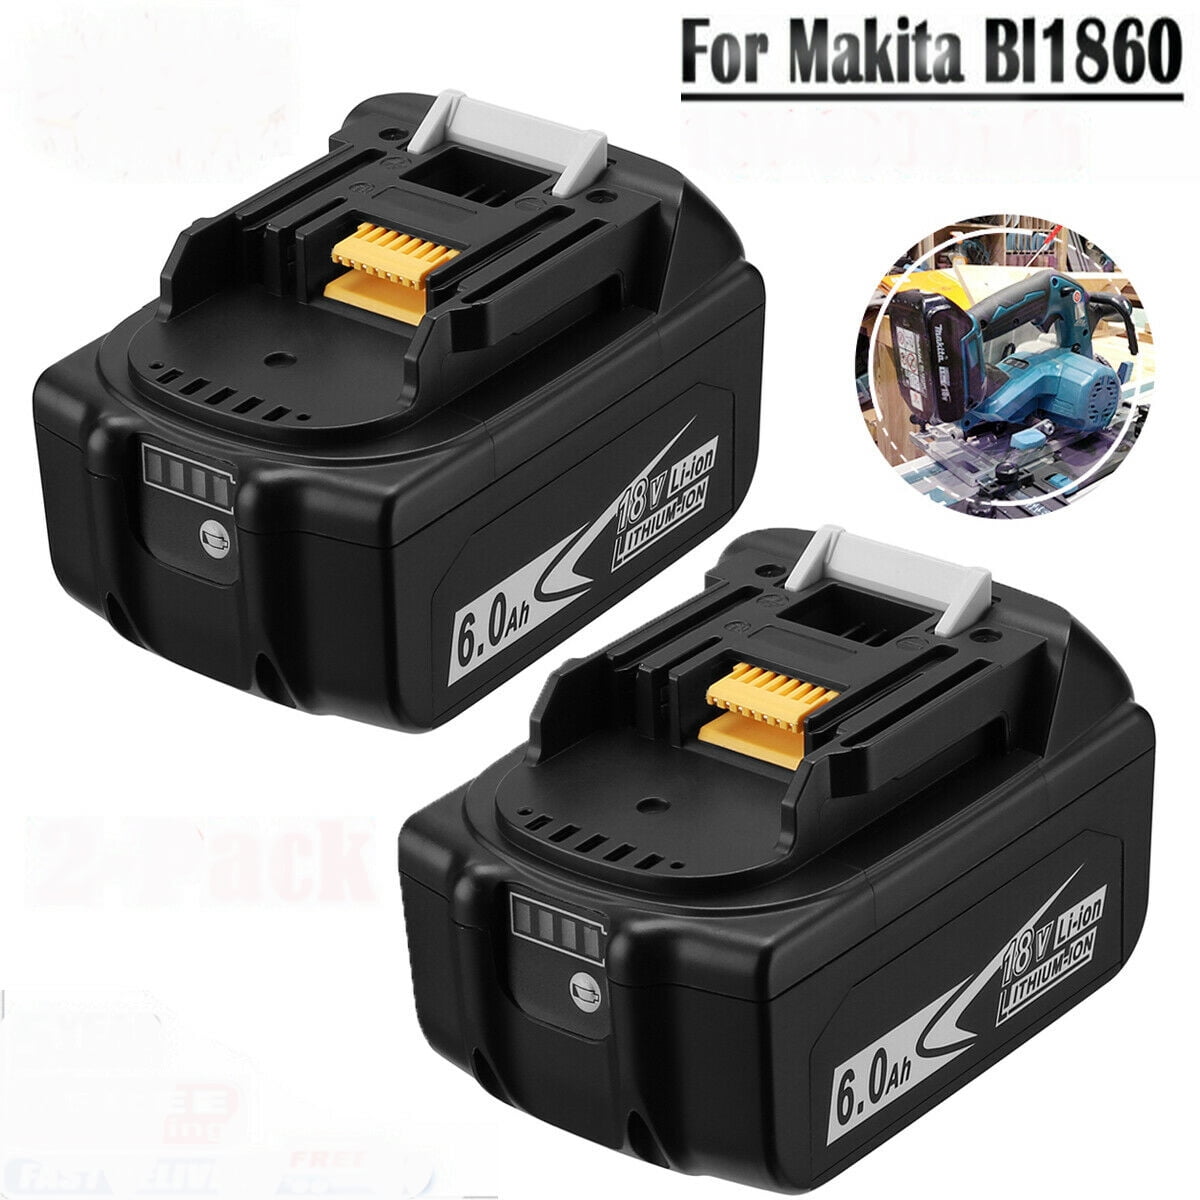 2x 18V 6.0AH Battery For Makita BL1860 BL1850 BL1840 BL1830 BL1820 Led Indicator 